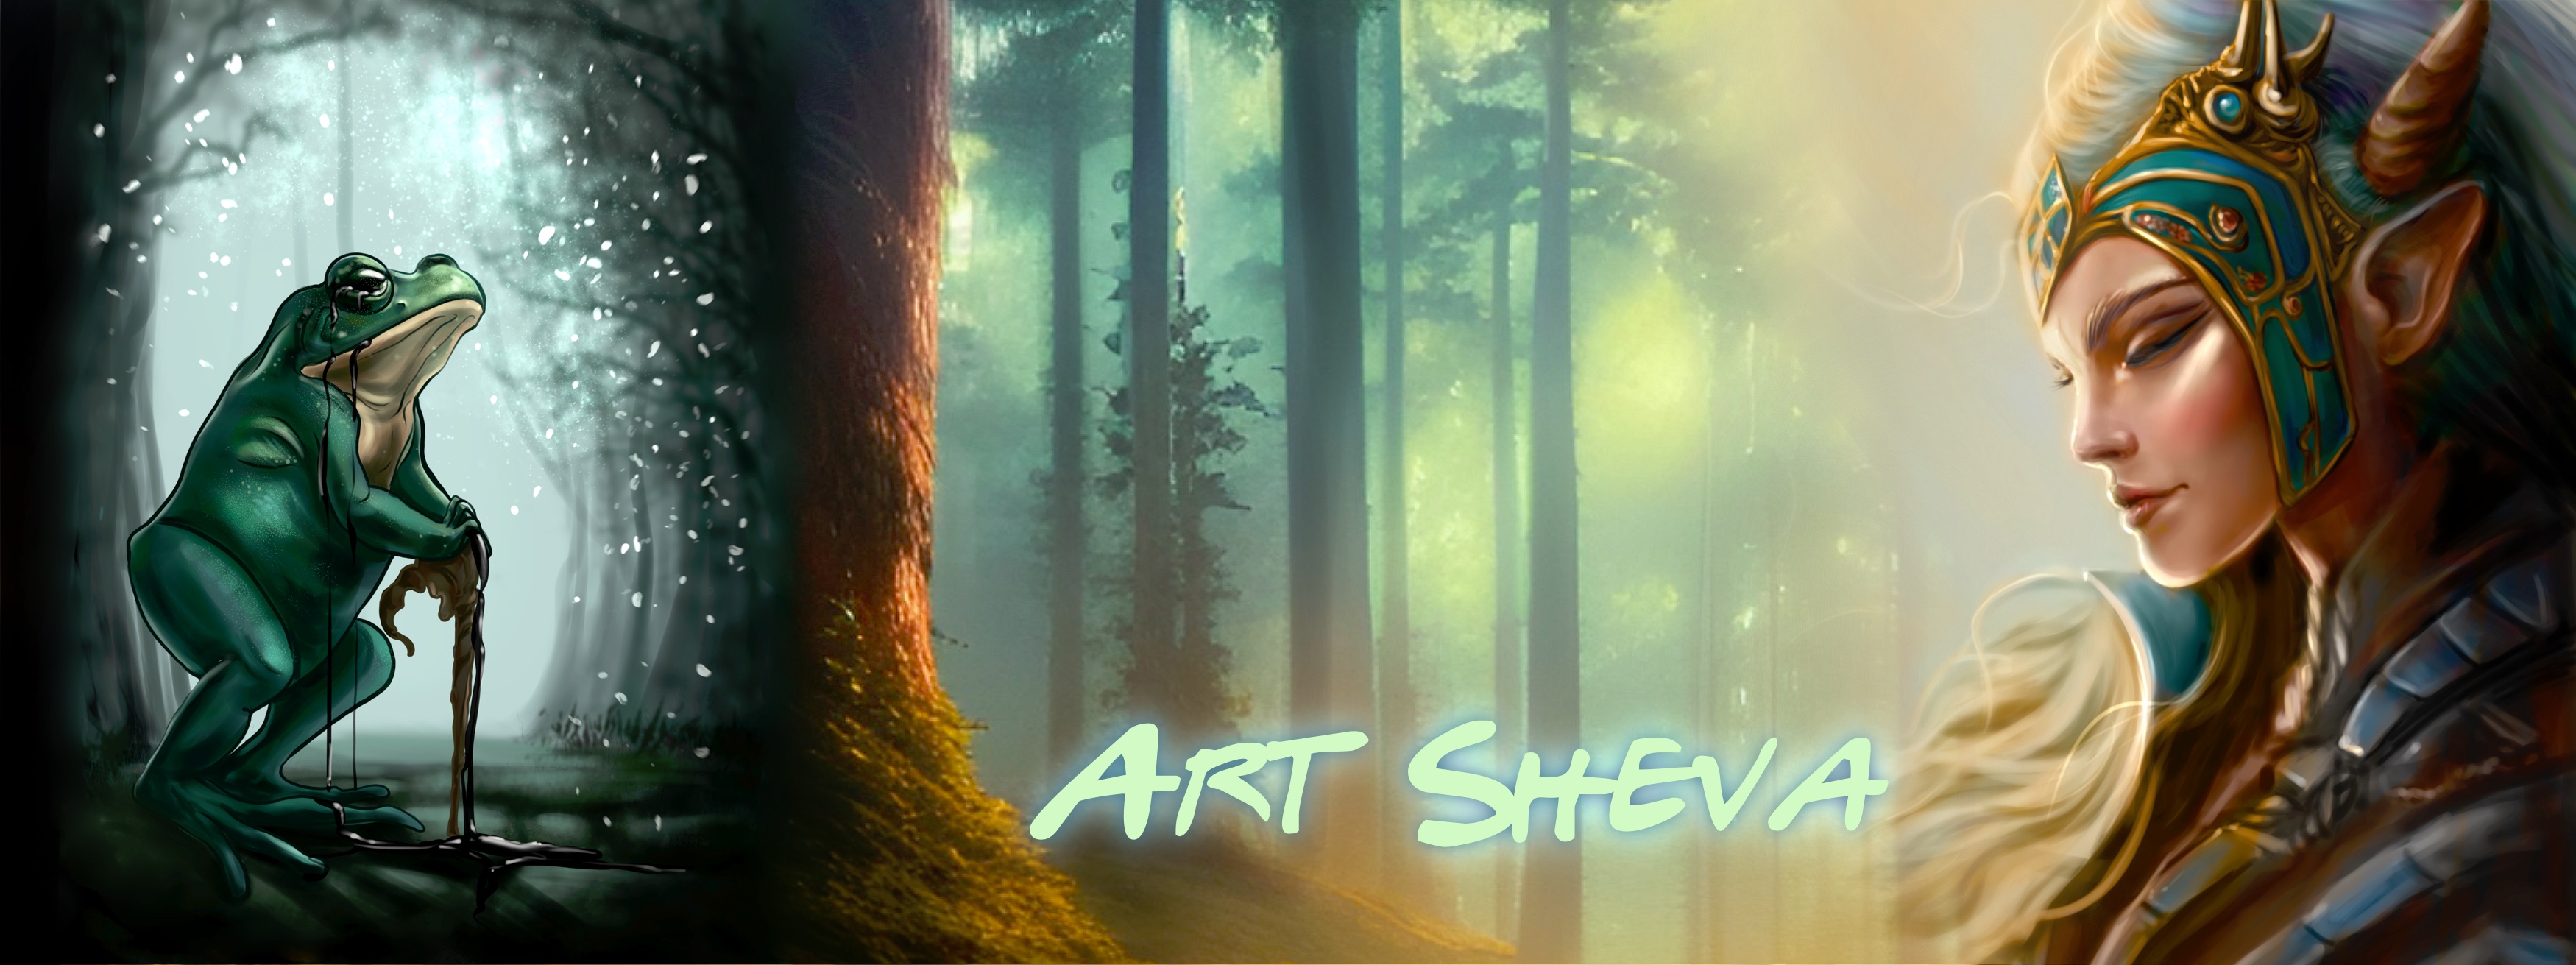 Art_Sheva banner